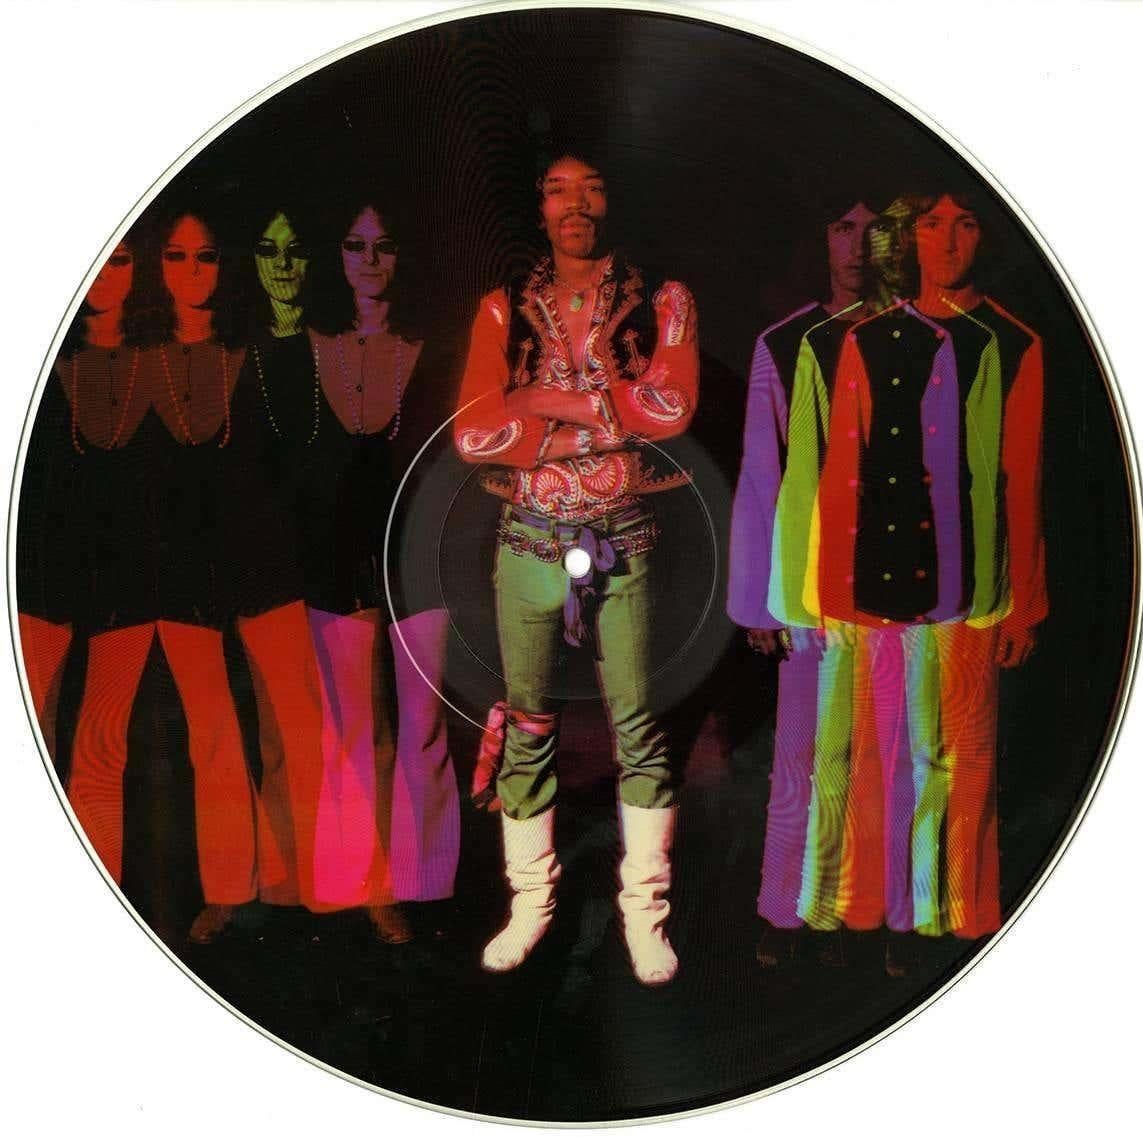 Disque vinyle vintage de Jimi Hendrix illustré sur les deux faces de photos de Michael Ochs : The Interview, publié en 1982.

Mesures : 12 x 12 pouces. 

L'encadrement est superbe.

Comprend la pochette d'origine découpée à l'emporte-pièce. Très bon